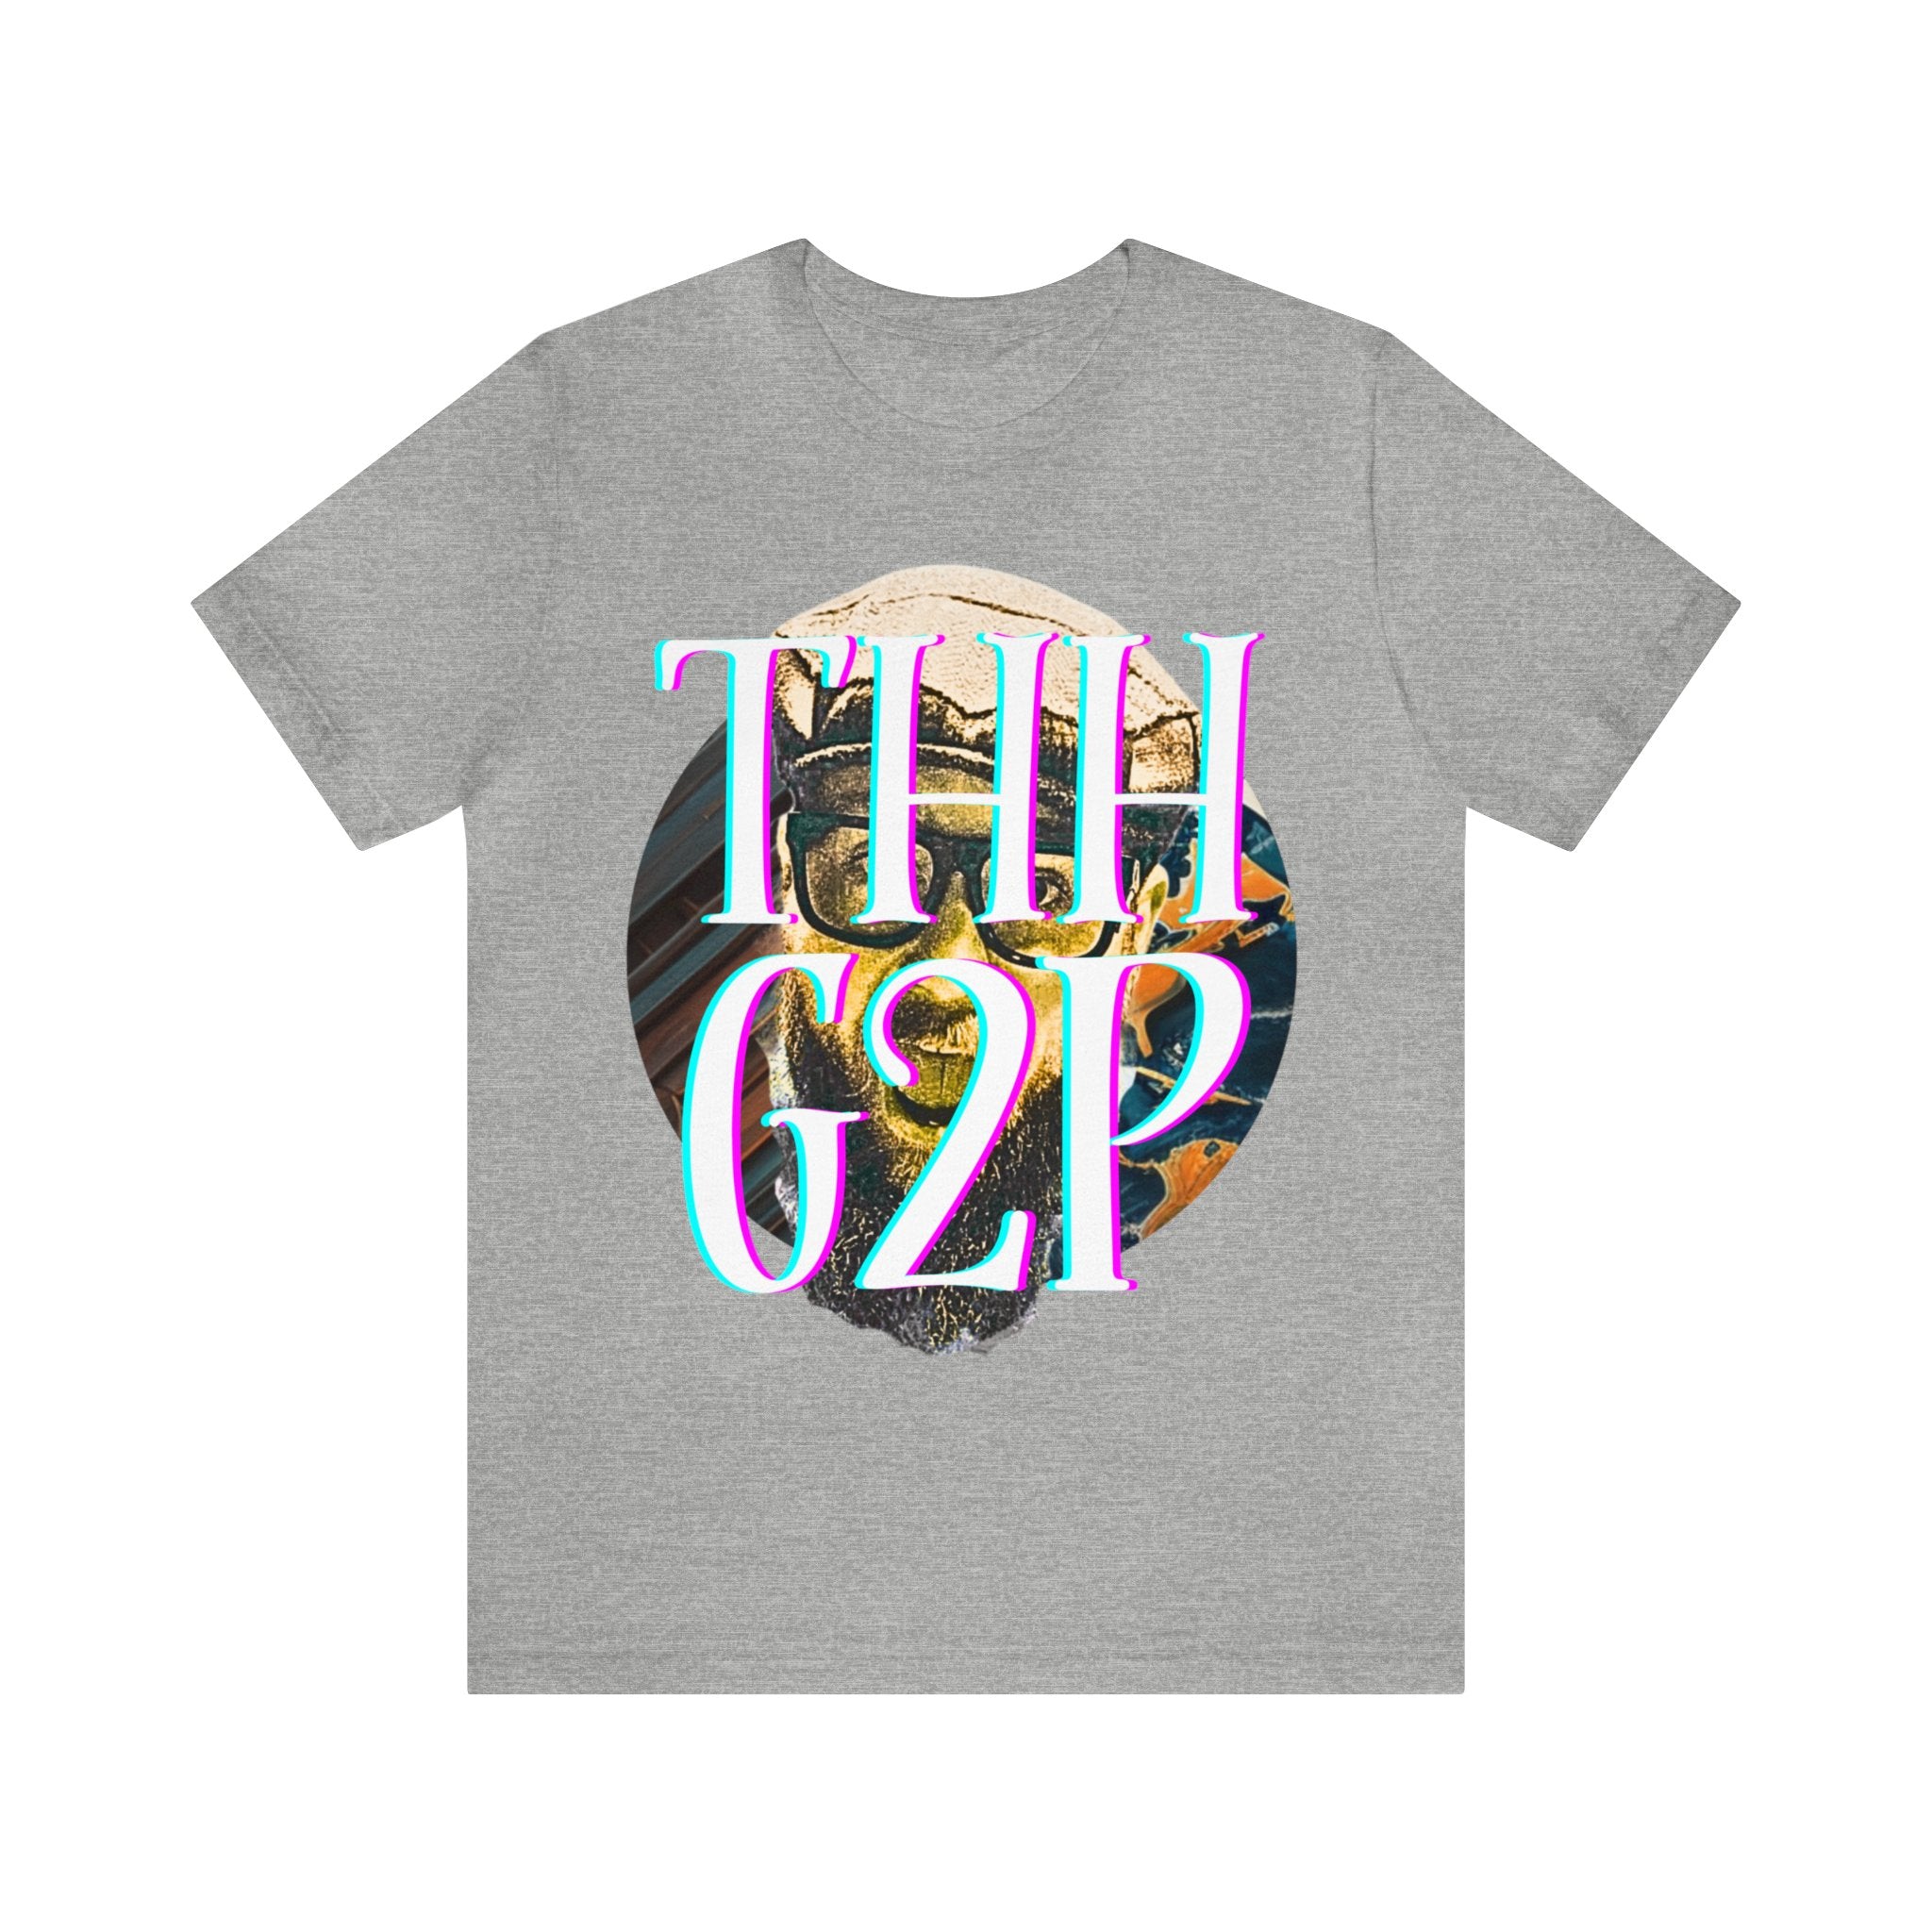 Frekkalbotum THHG2P T-shirt